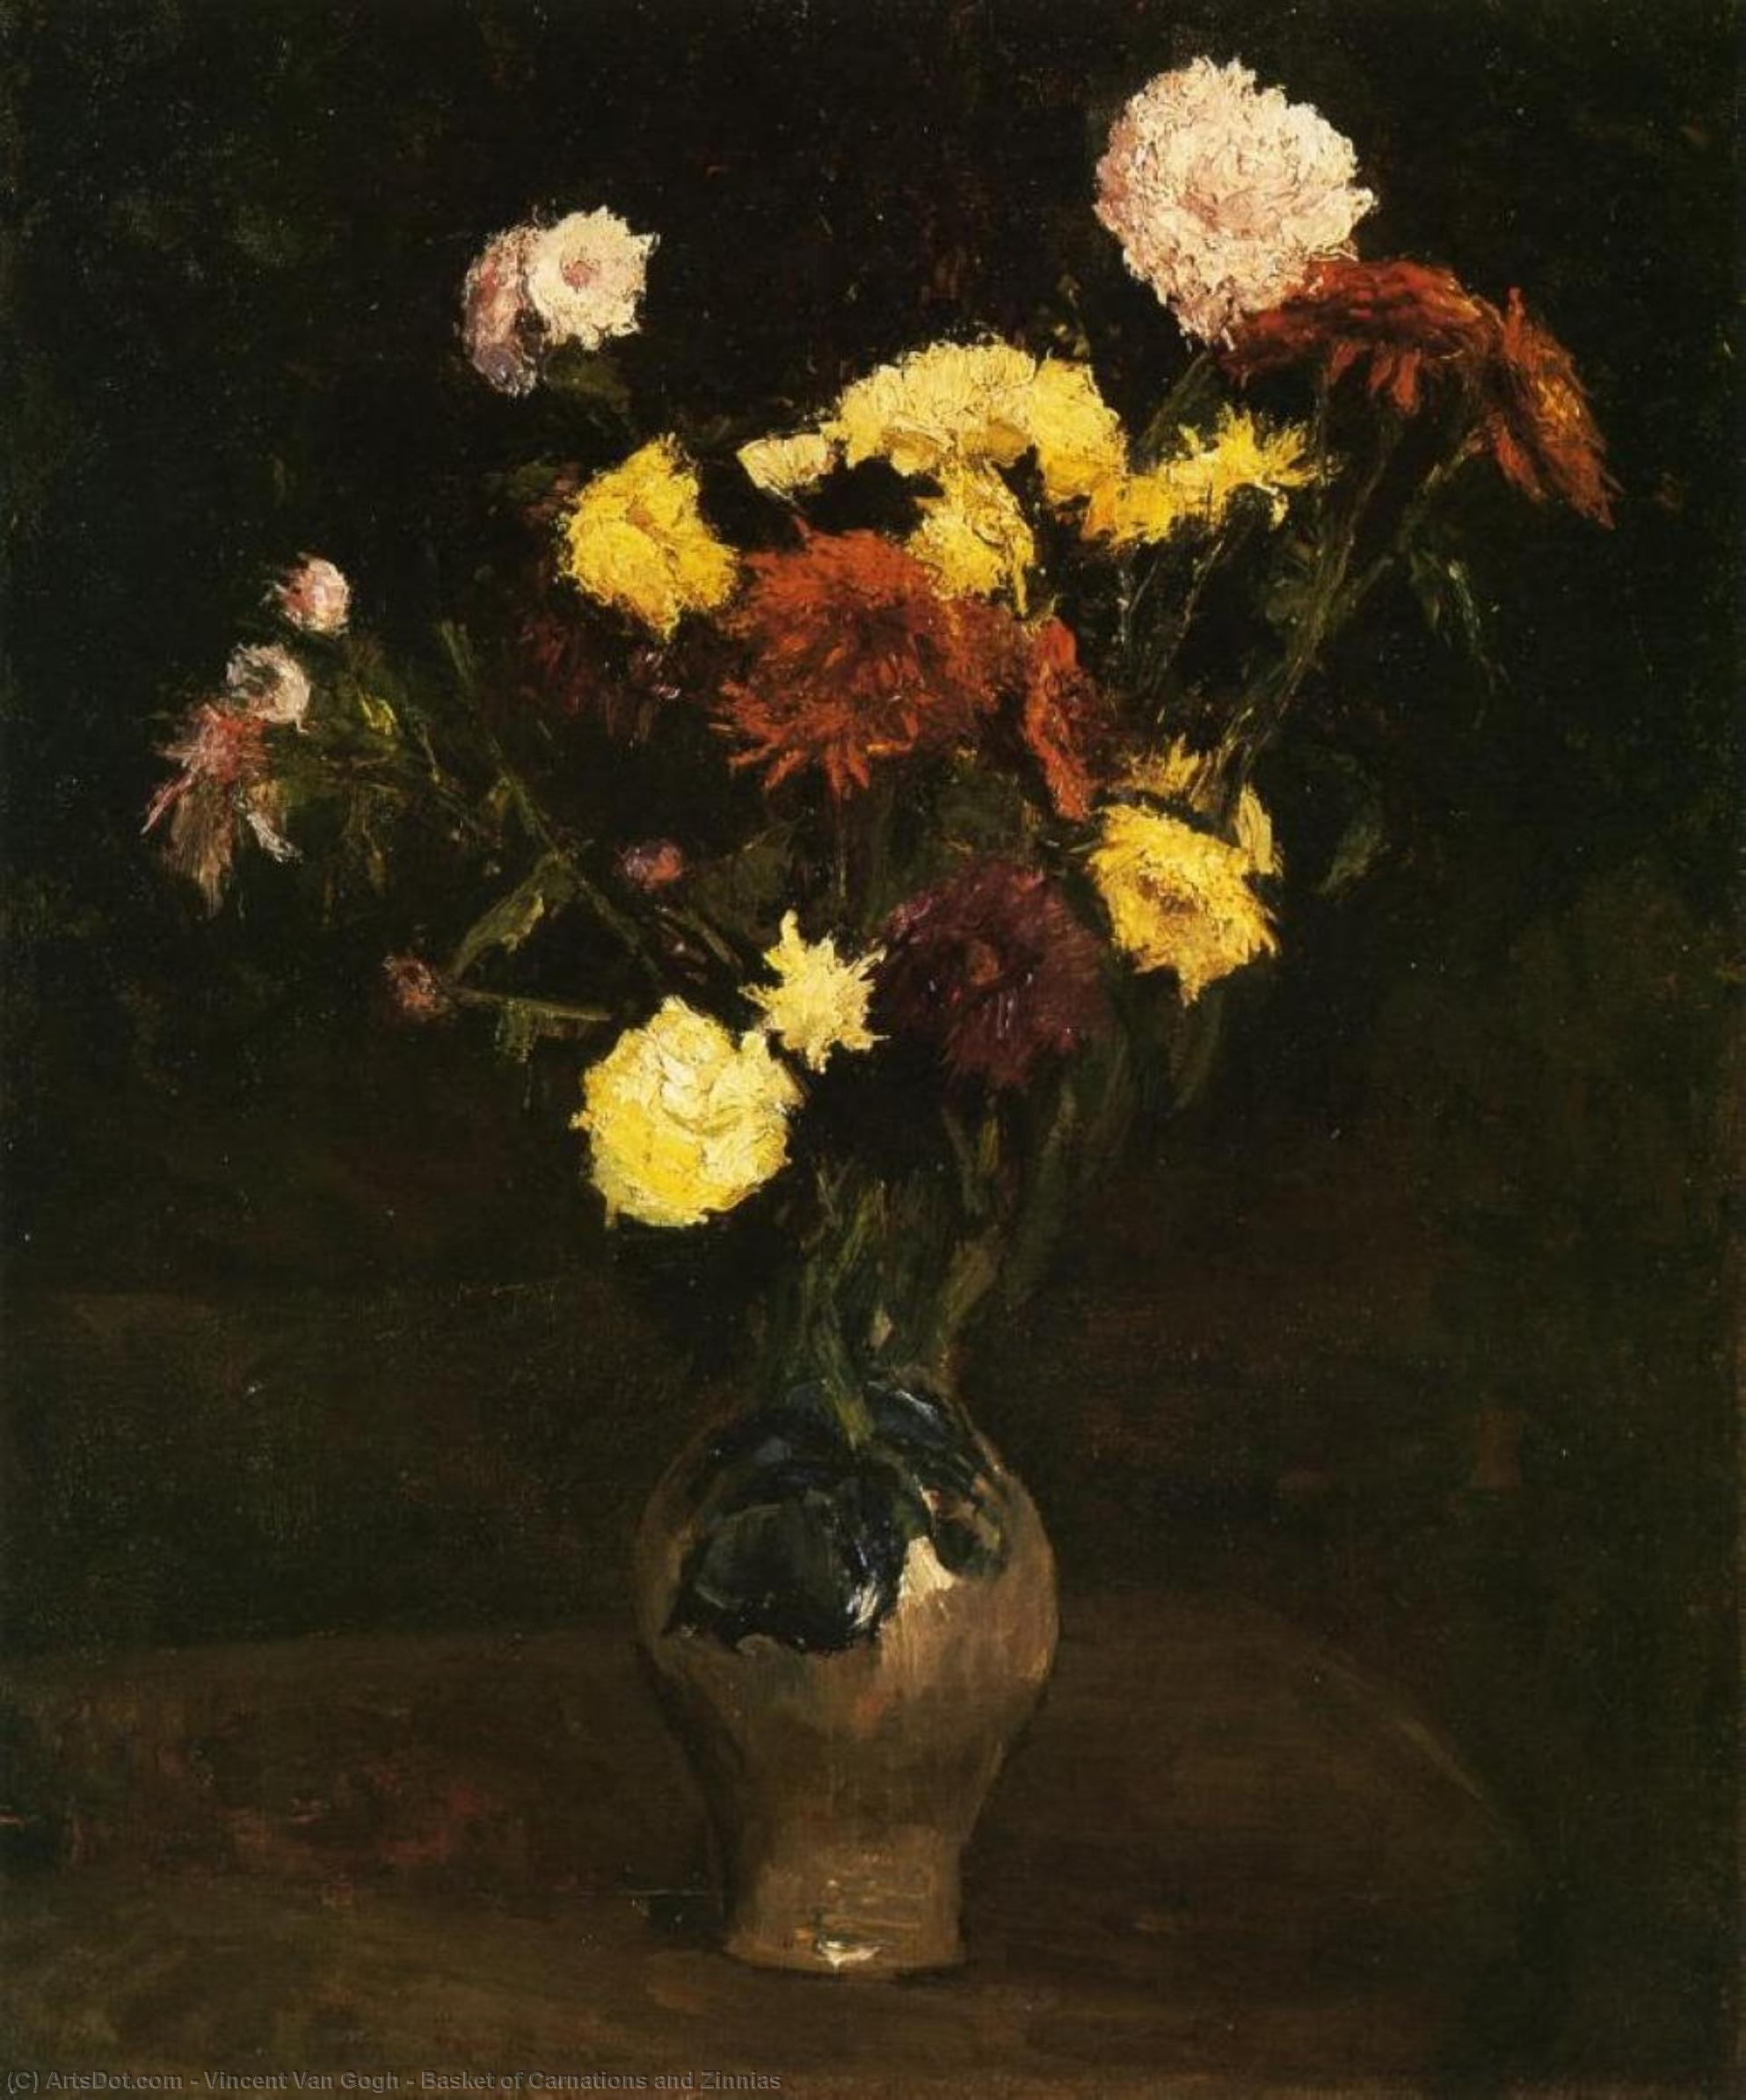 WikiOO.org - אנציקלופדיה לאמנויות יפות - ציור, יצירות אמנות Vincent Van Gogh - Basket of Carnations and Zinnias